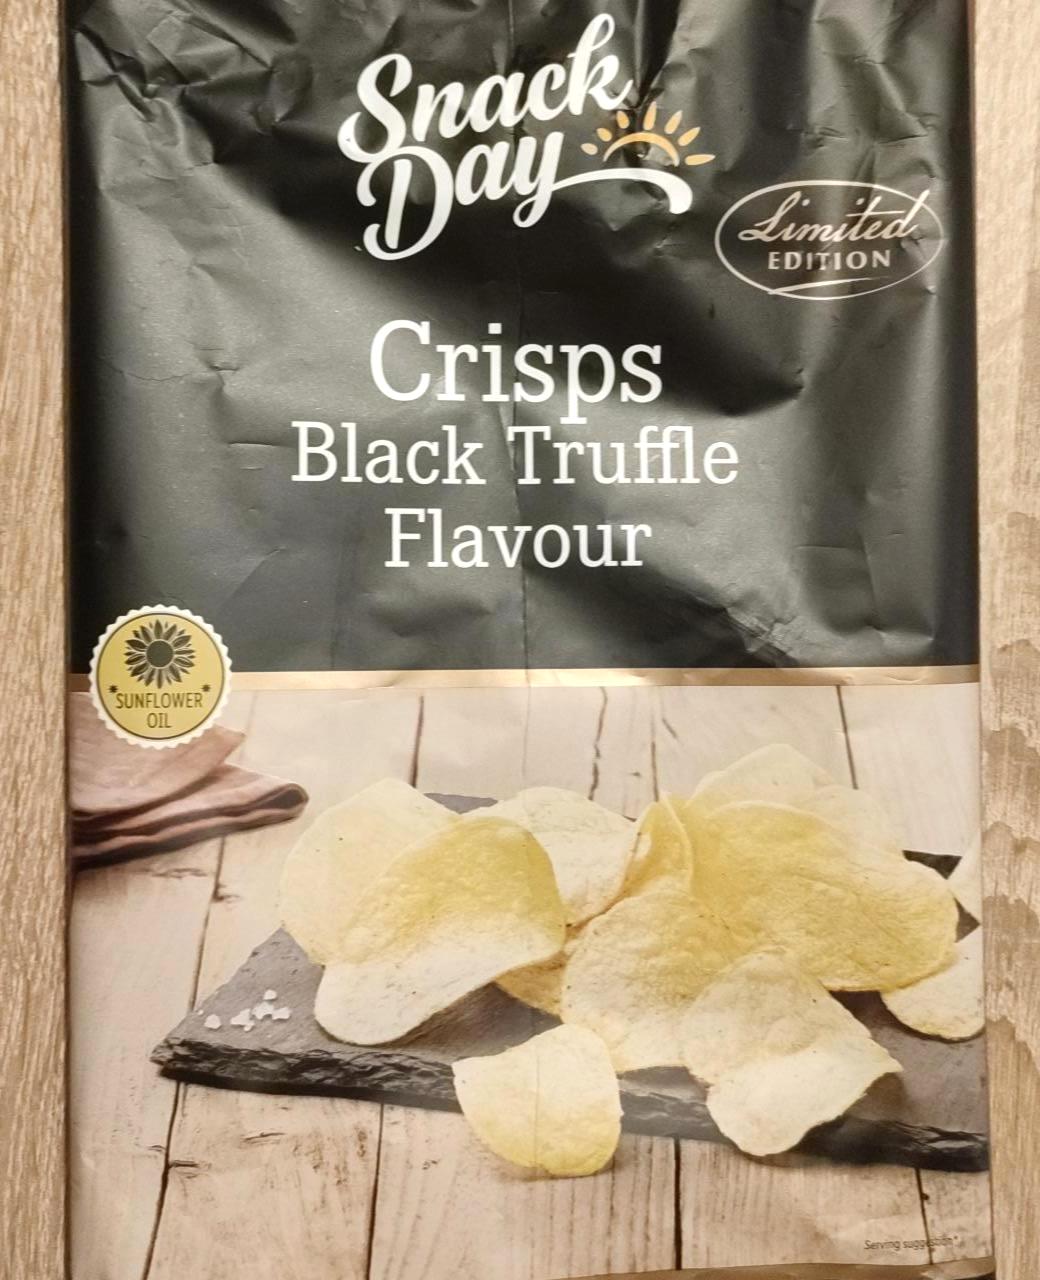 Képek - Feketeszarvasgomba-ízű burgonya chips Snack day